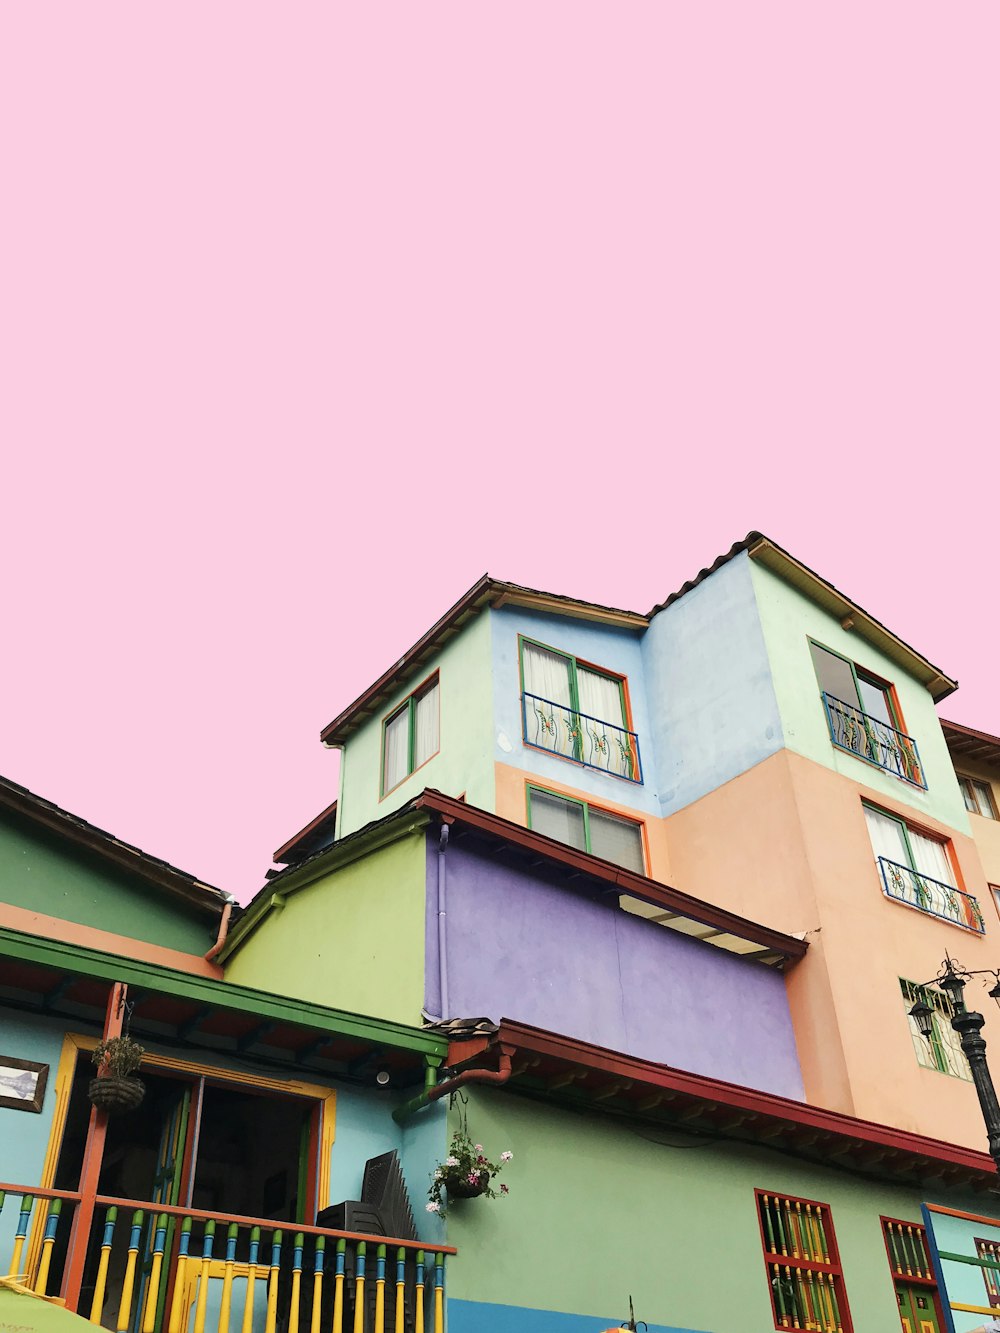 casa multicolor bajo cielo rosado